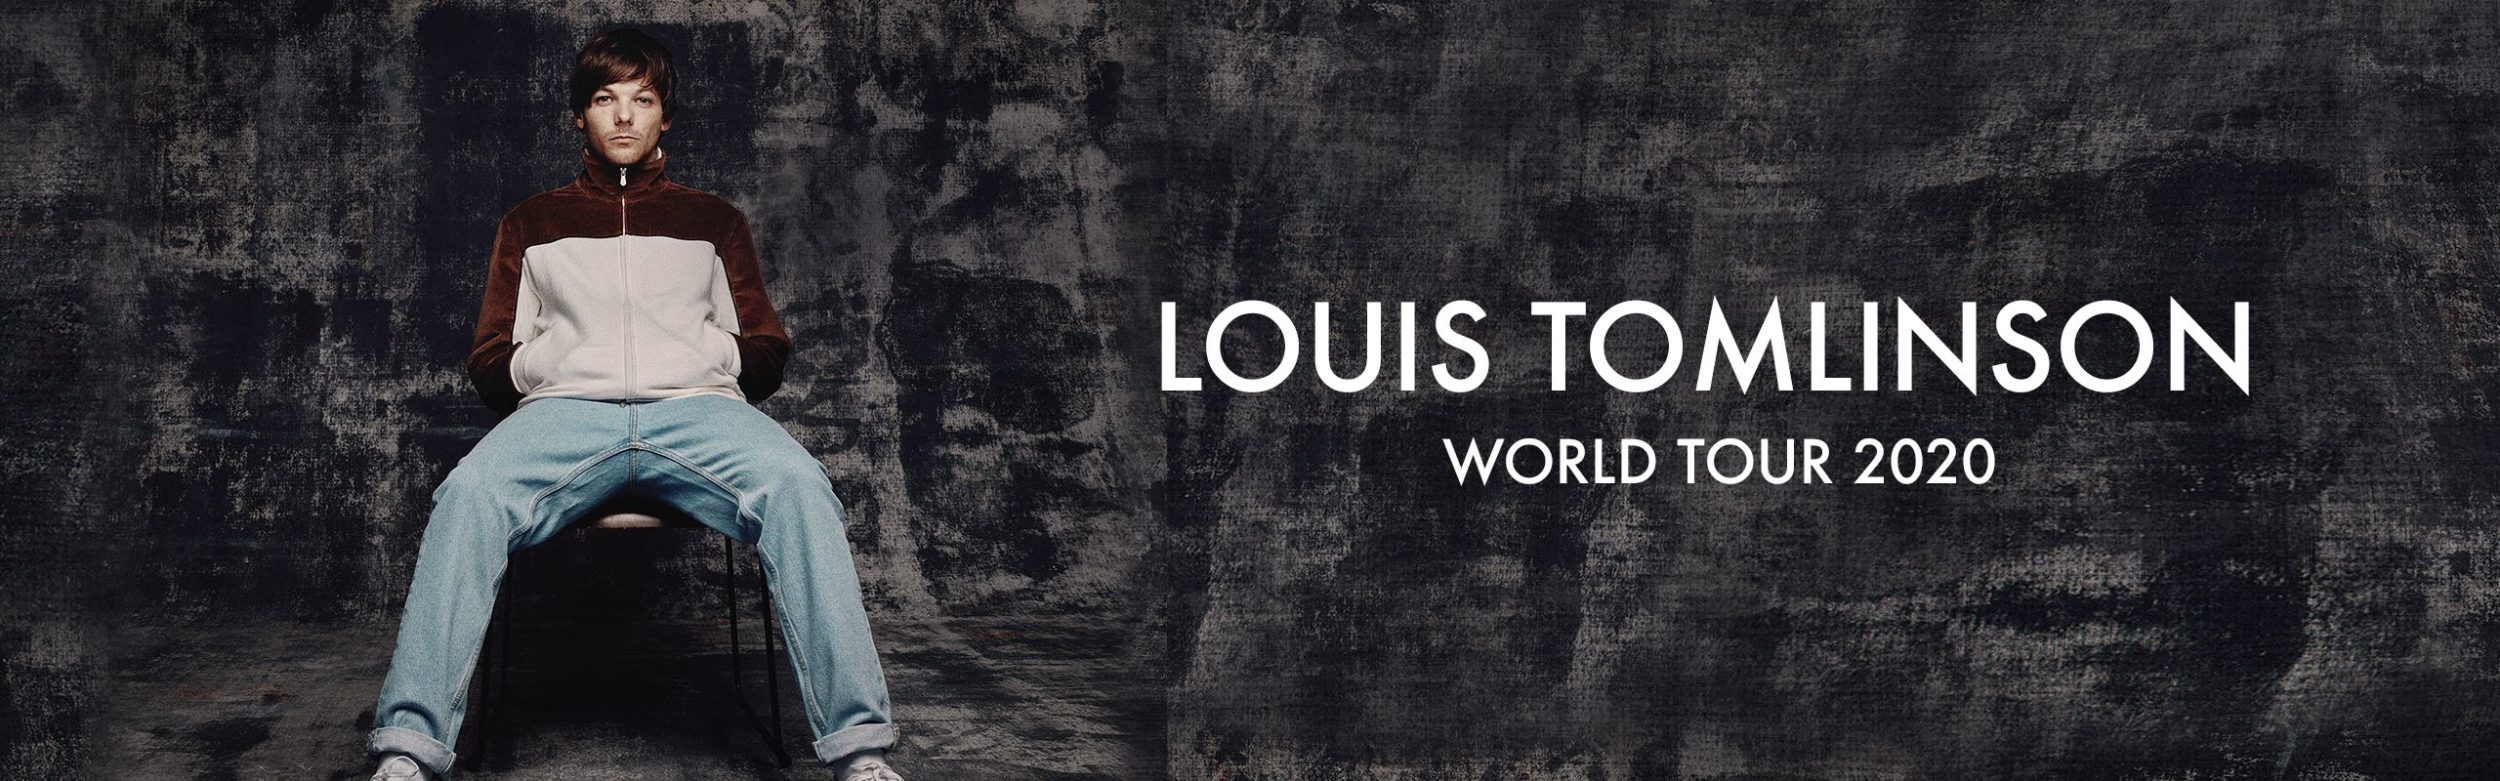 Louis Tomlinson World Tour